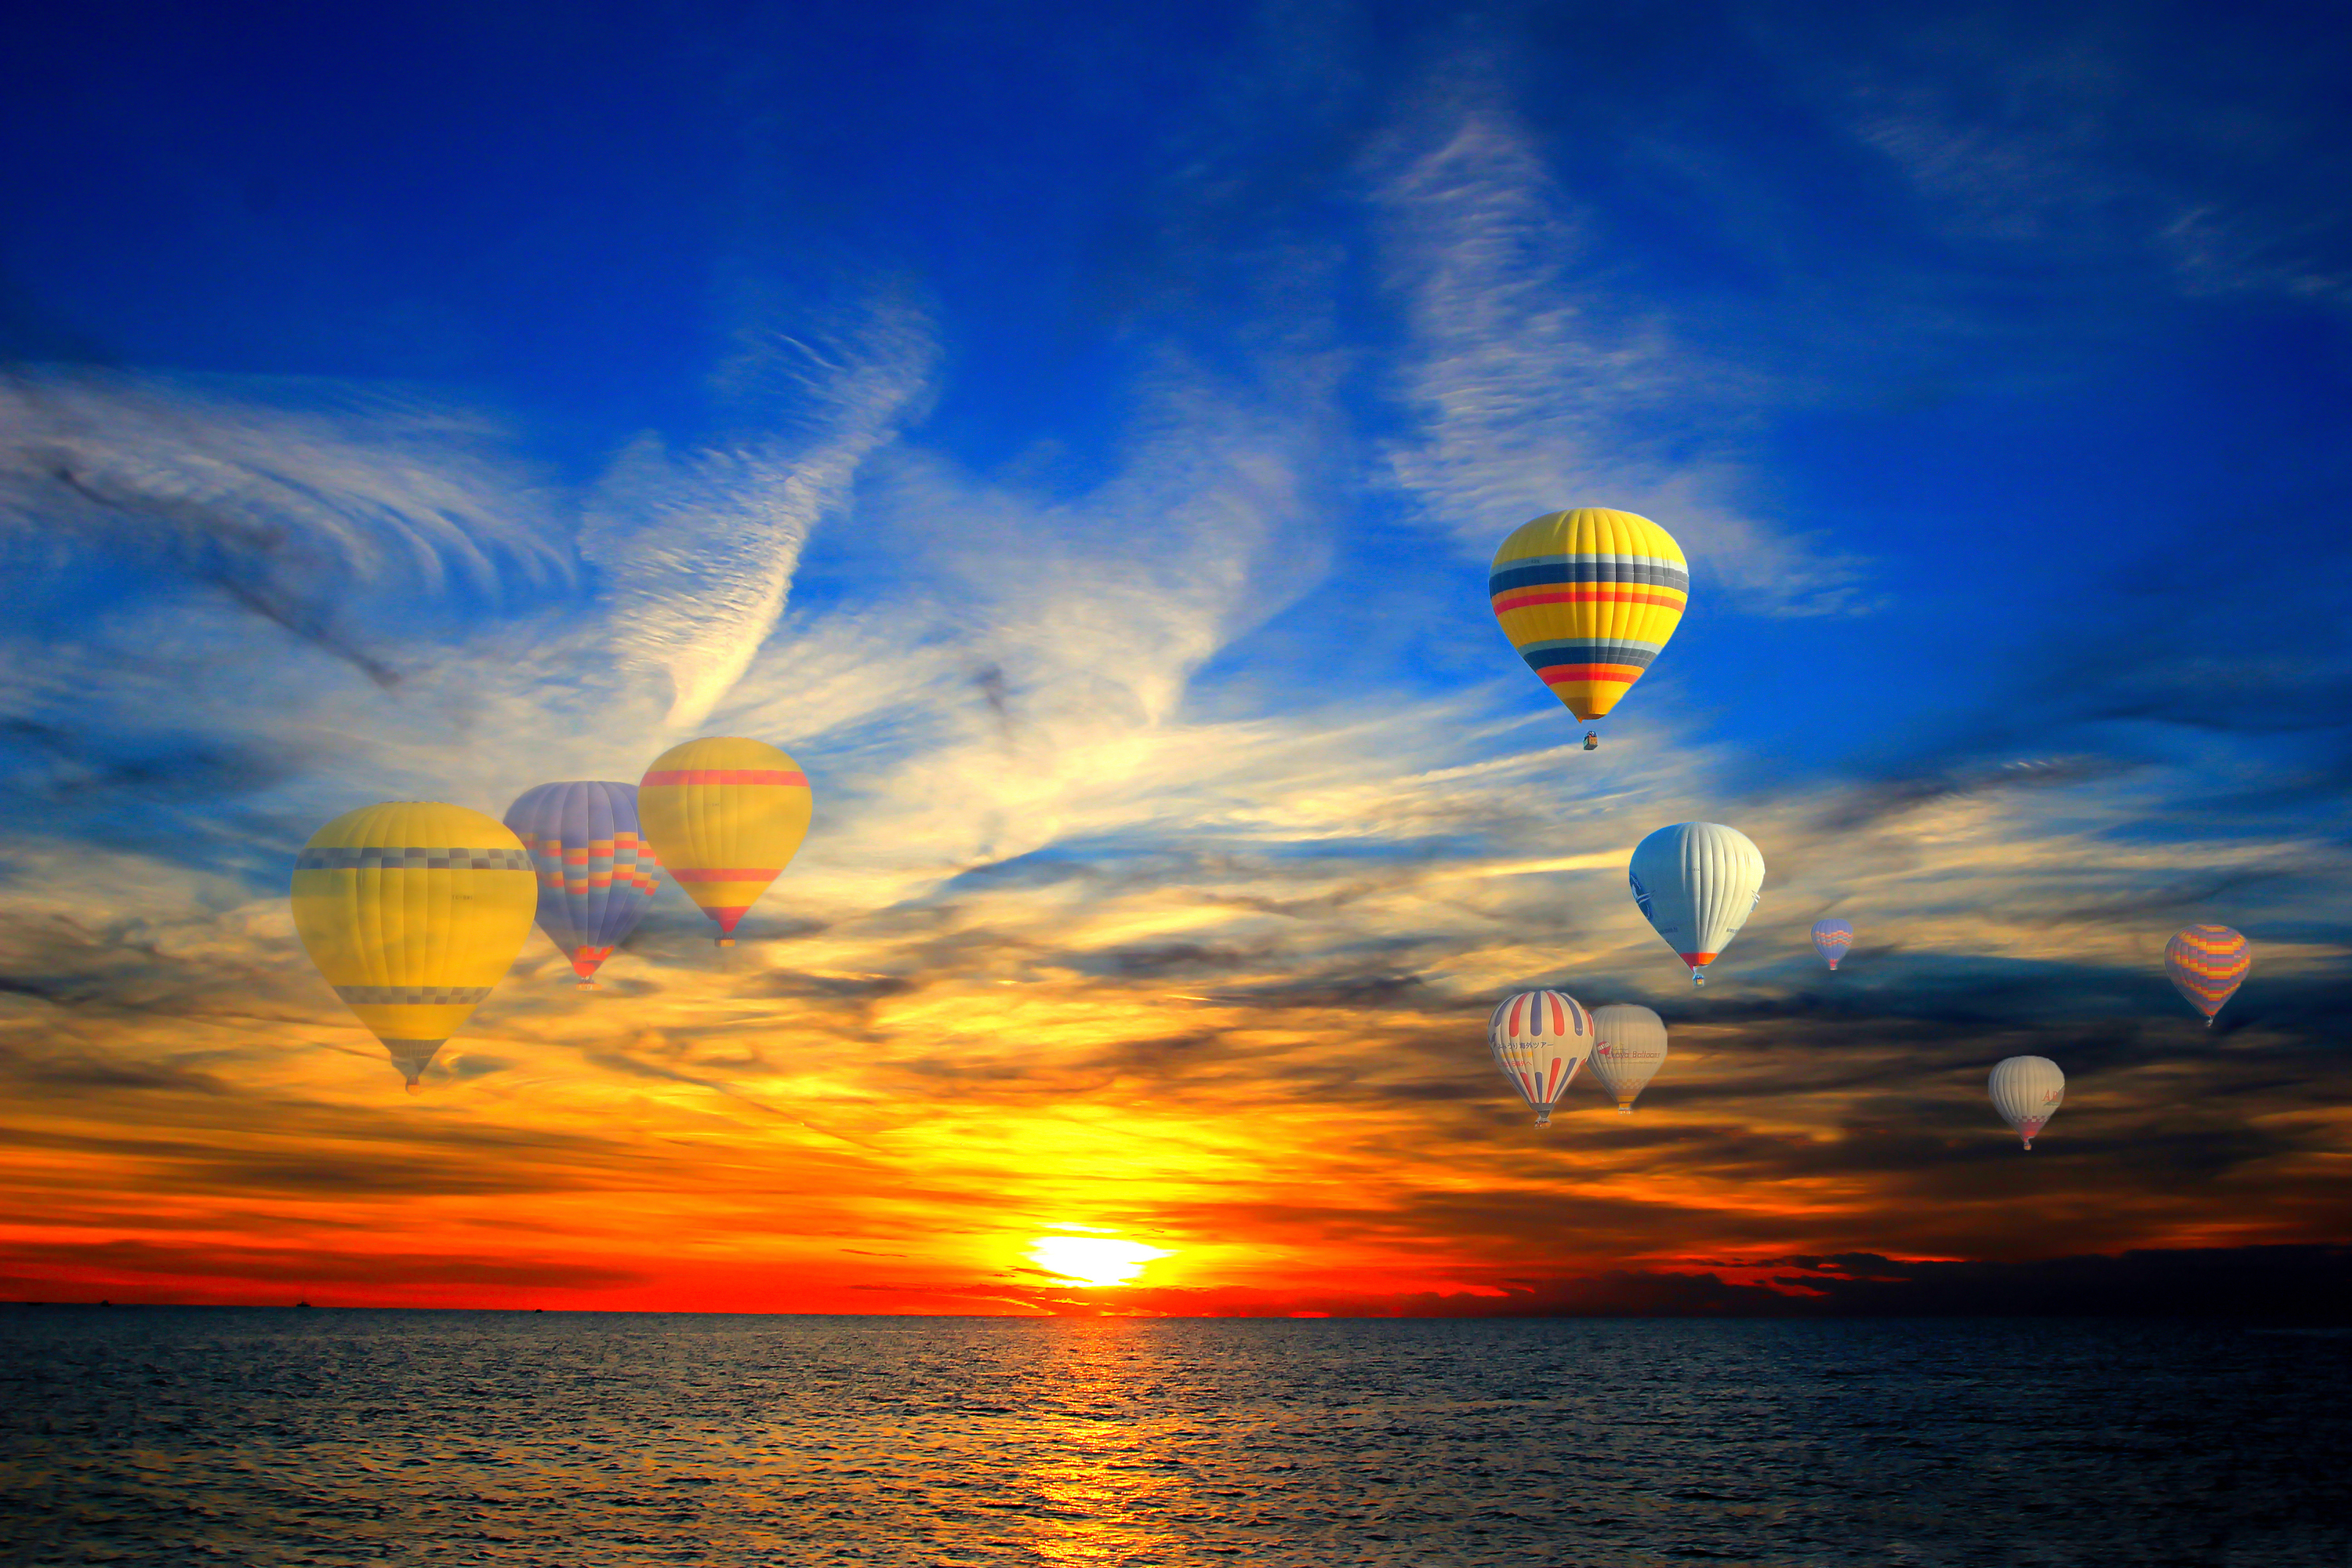 3000 X 2000 Hd Wallpapers - Hot Air Balloons Over Ocean - HD Wallpaper 